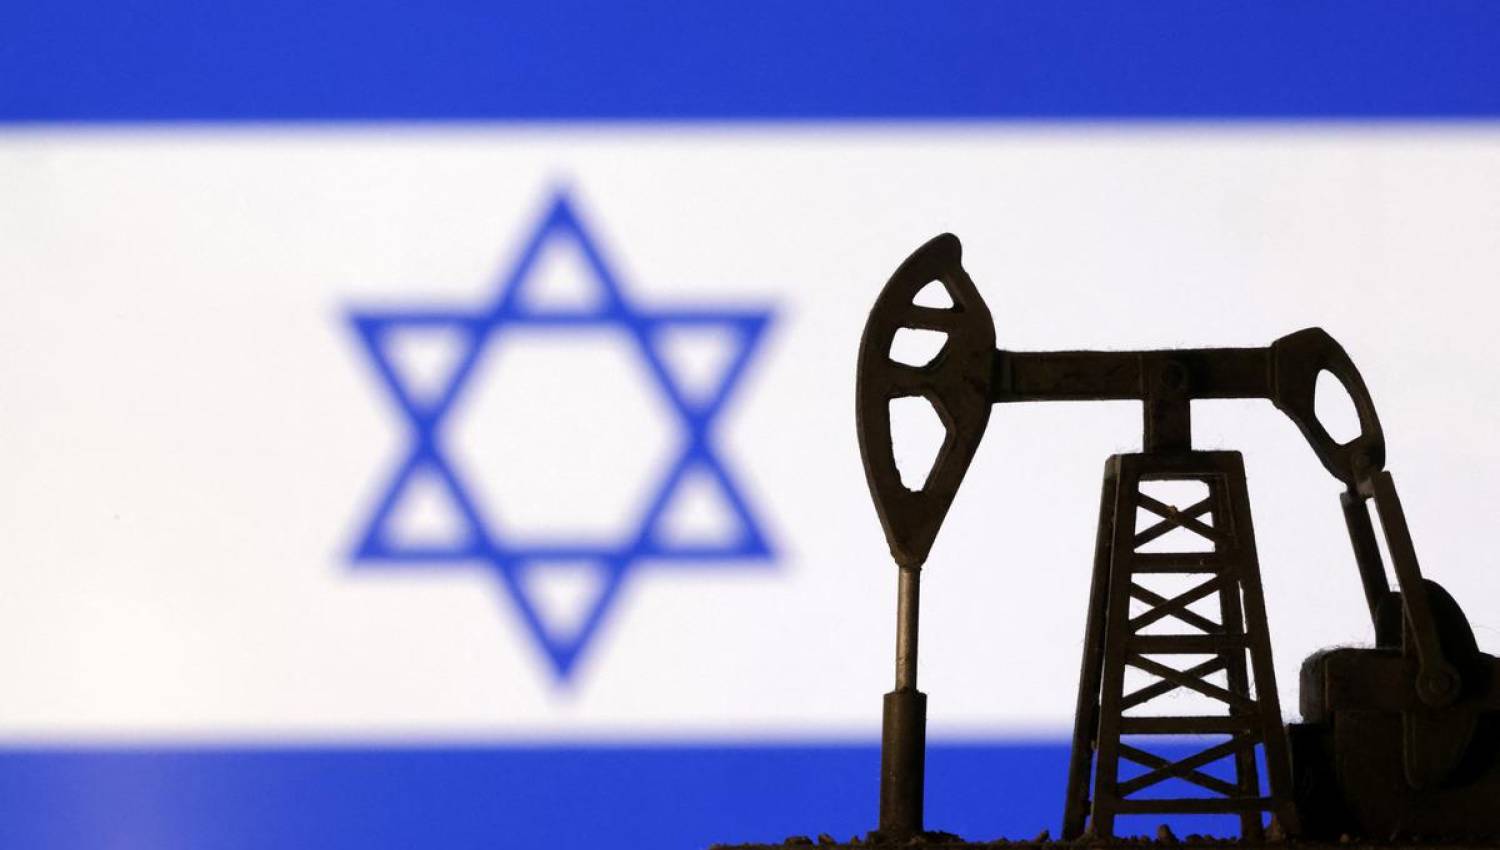 إطالة أمد الحرب: "إسرائيل" وجهاً لوجه مع المستثمرين الدوليين! 